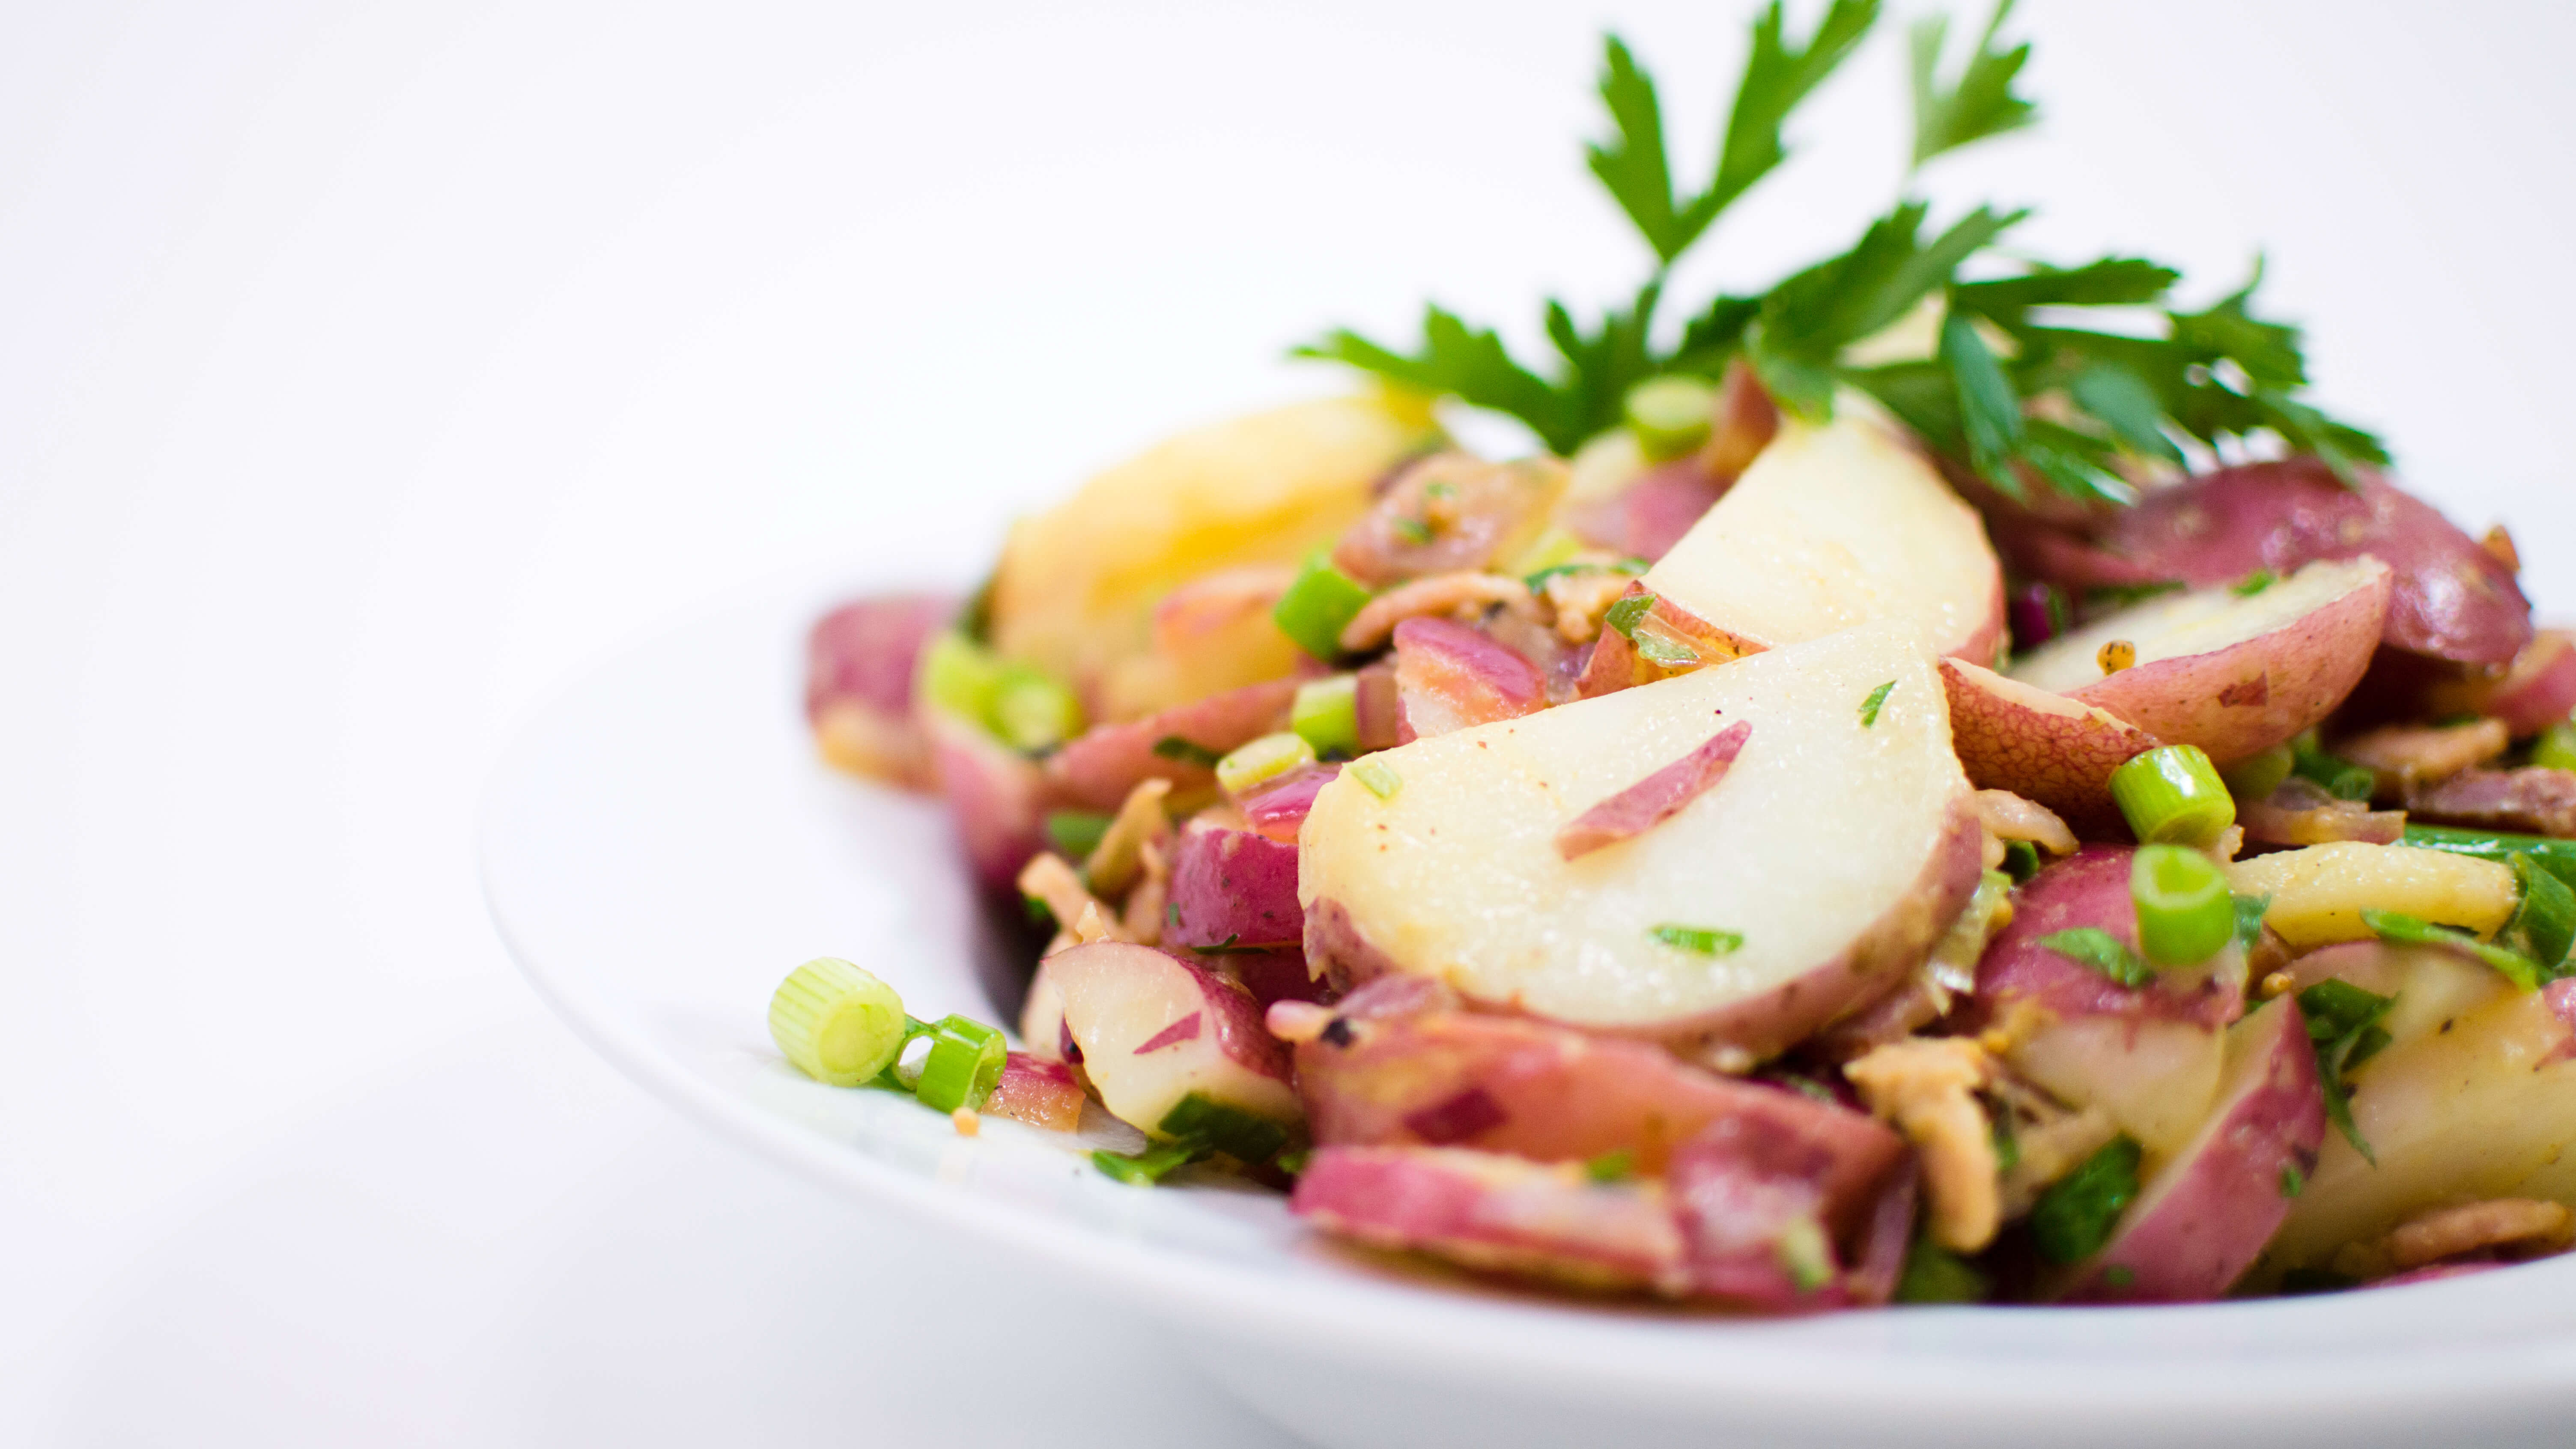 How To Make German Potato Salad